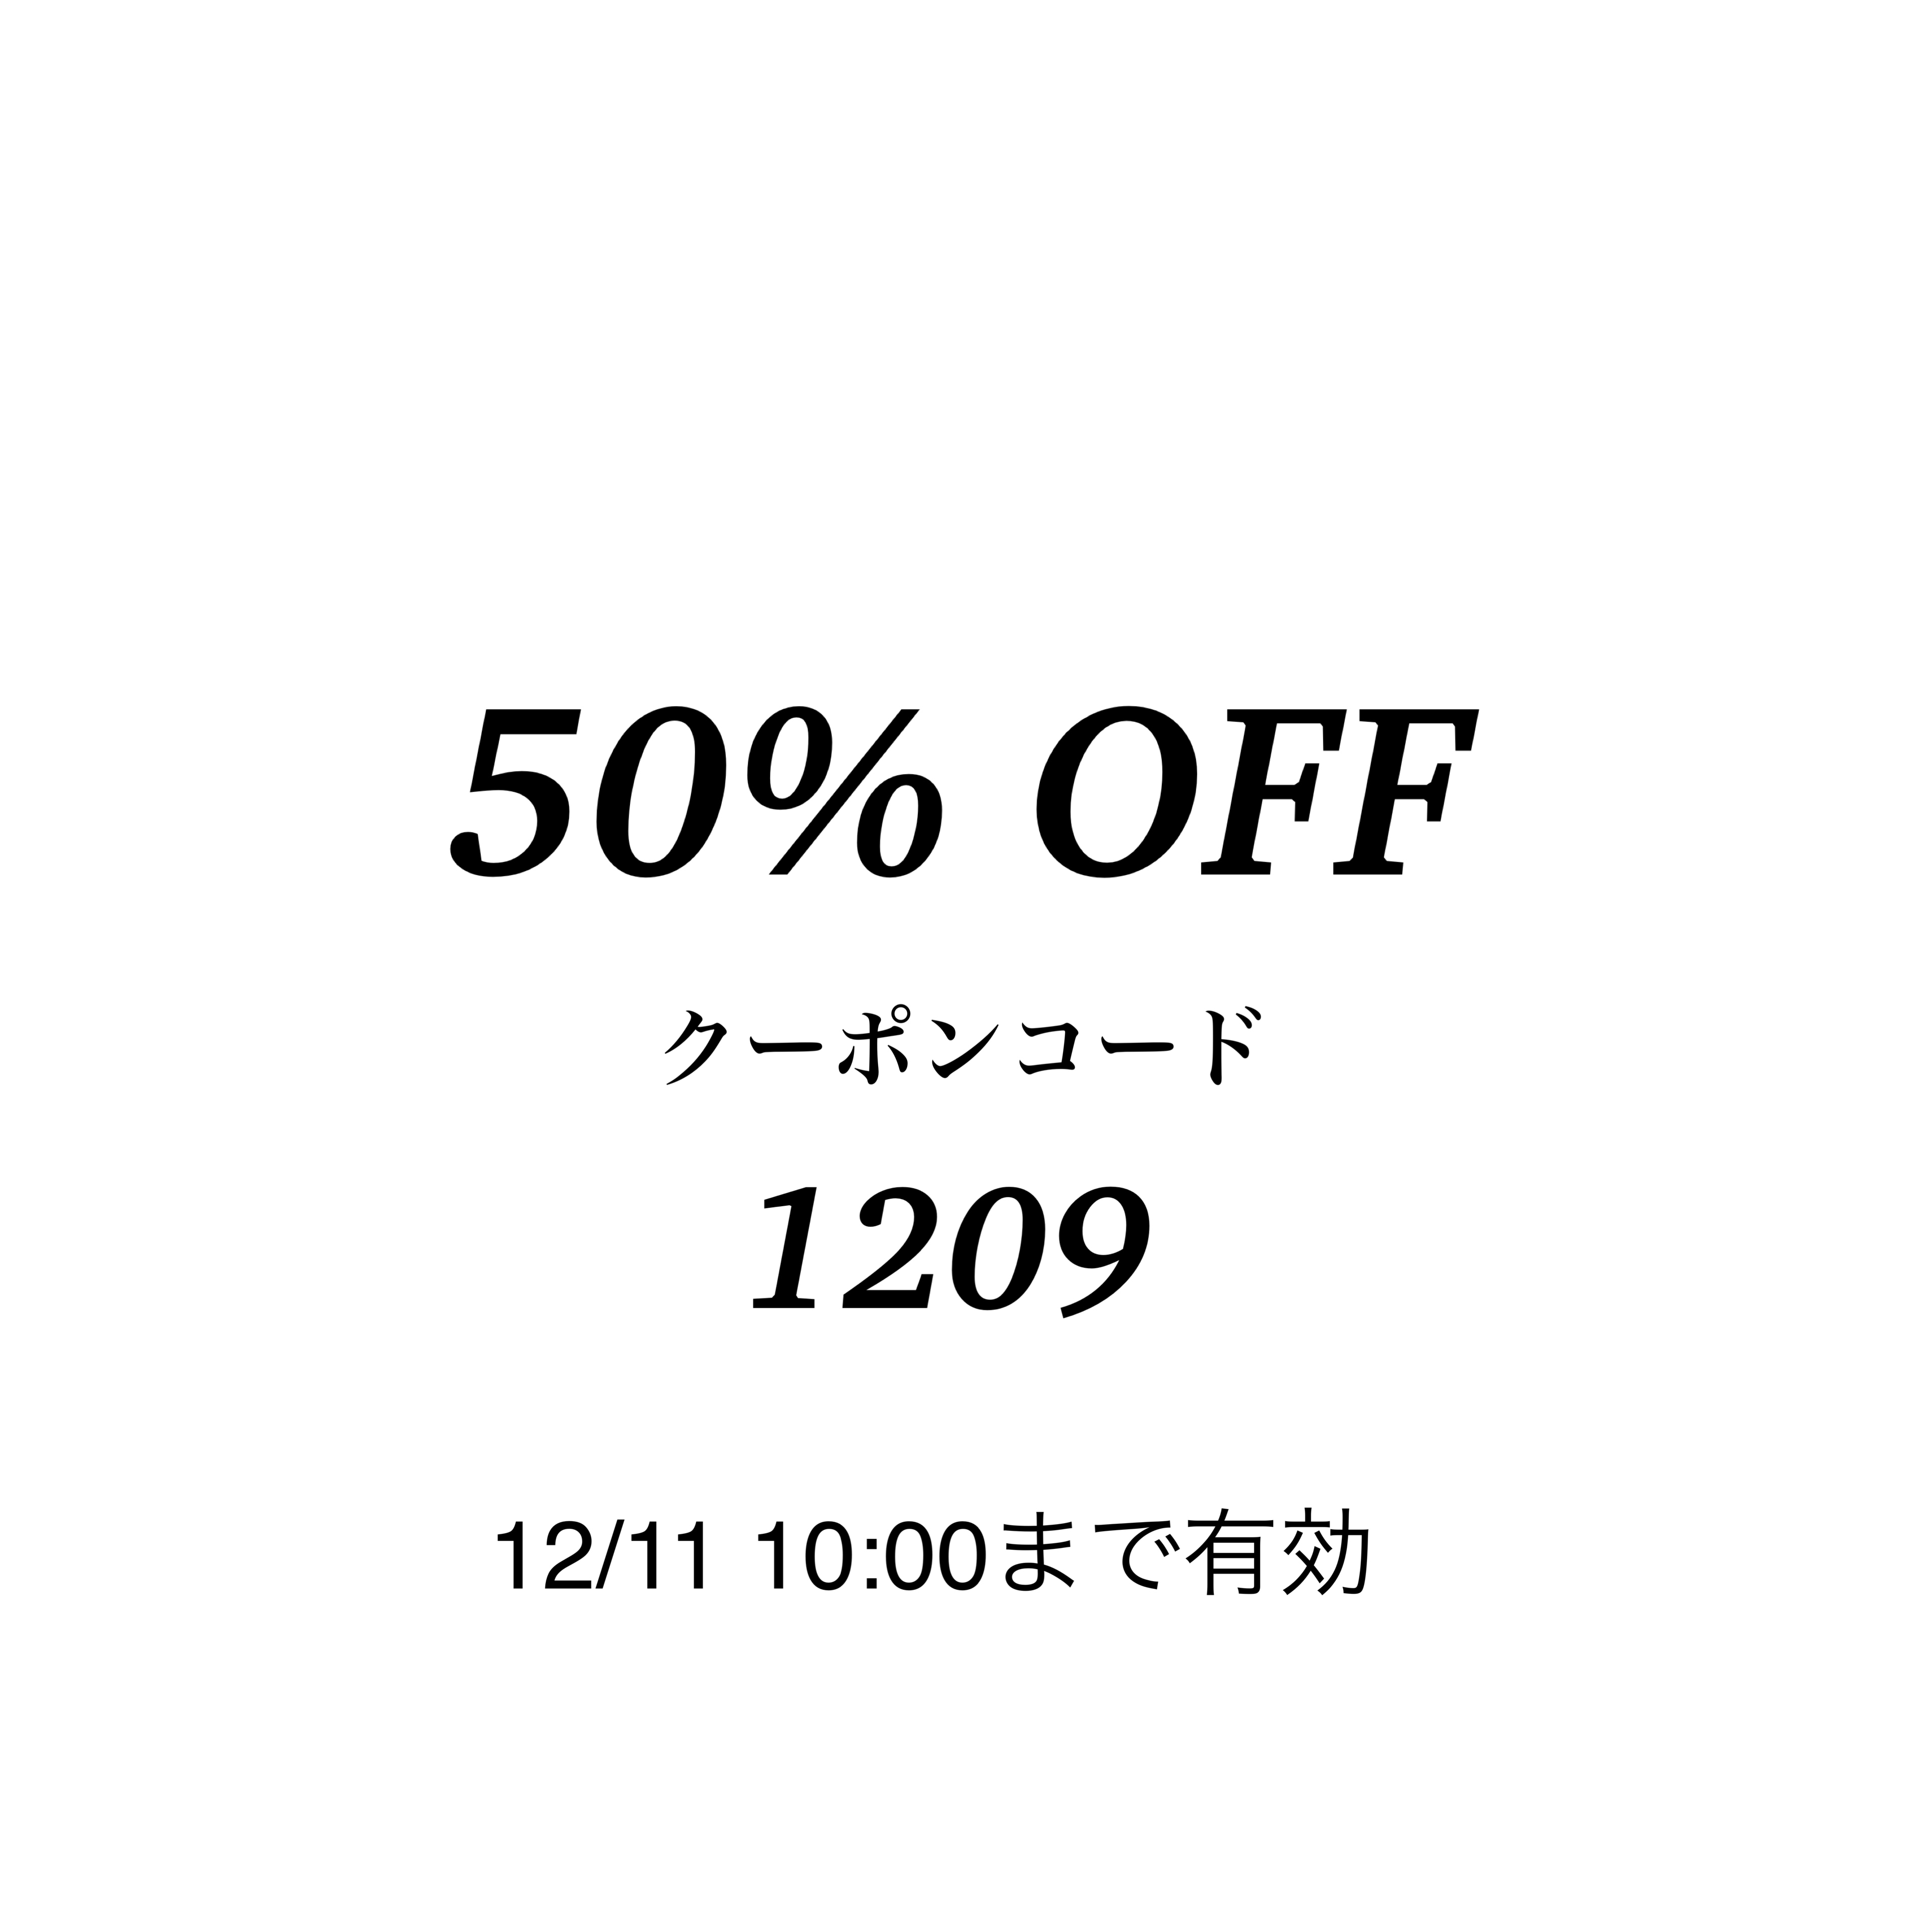 【48時間限定】50%OFFクーポン